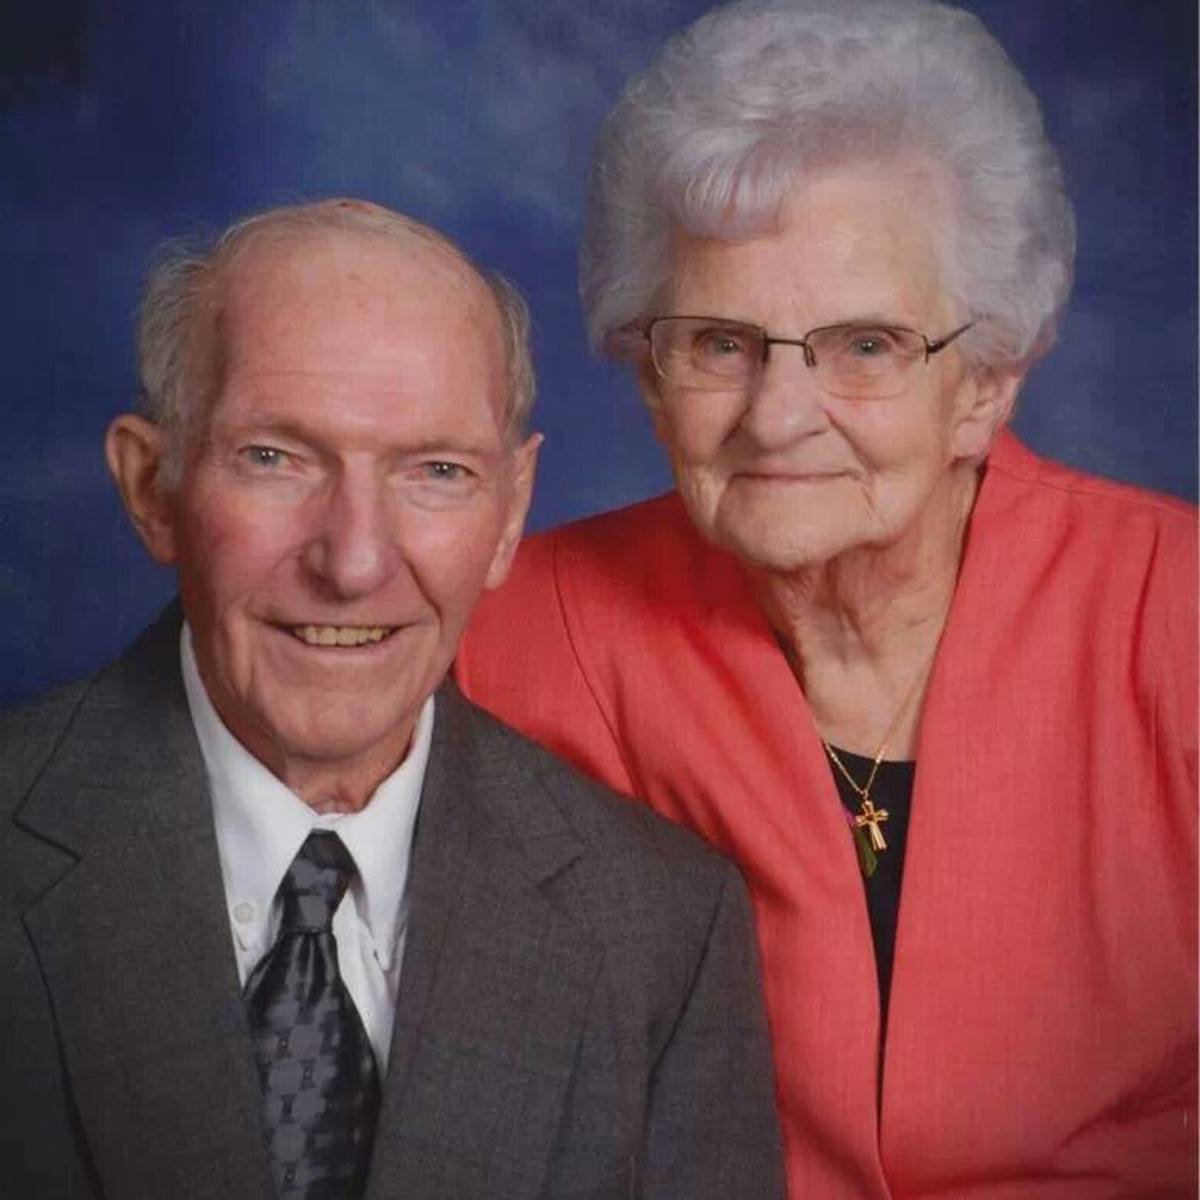 Δεν τους χώρισε ούτε ο θάνατος! Ήταν 70 χρόνια παντρεμένοι – Πέθαναν με 15 ώρες διαφορά